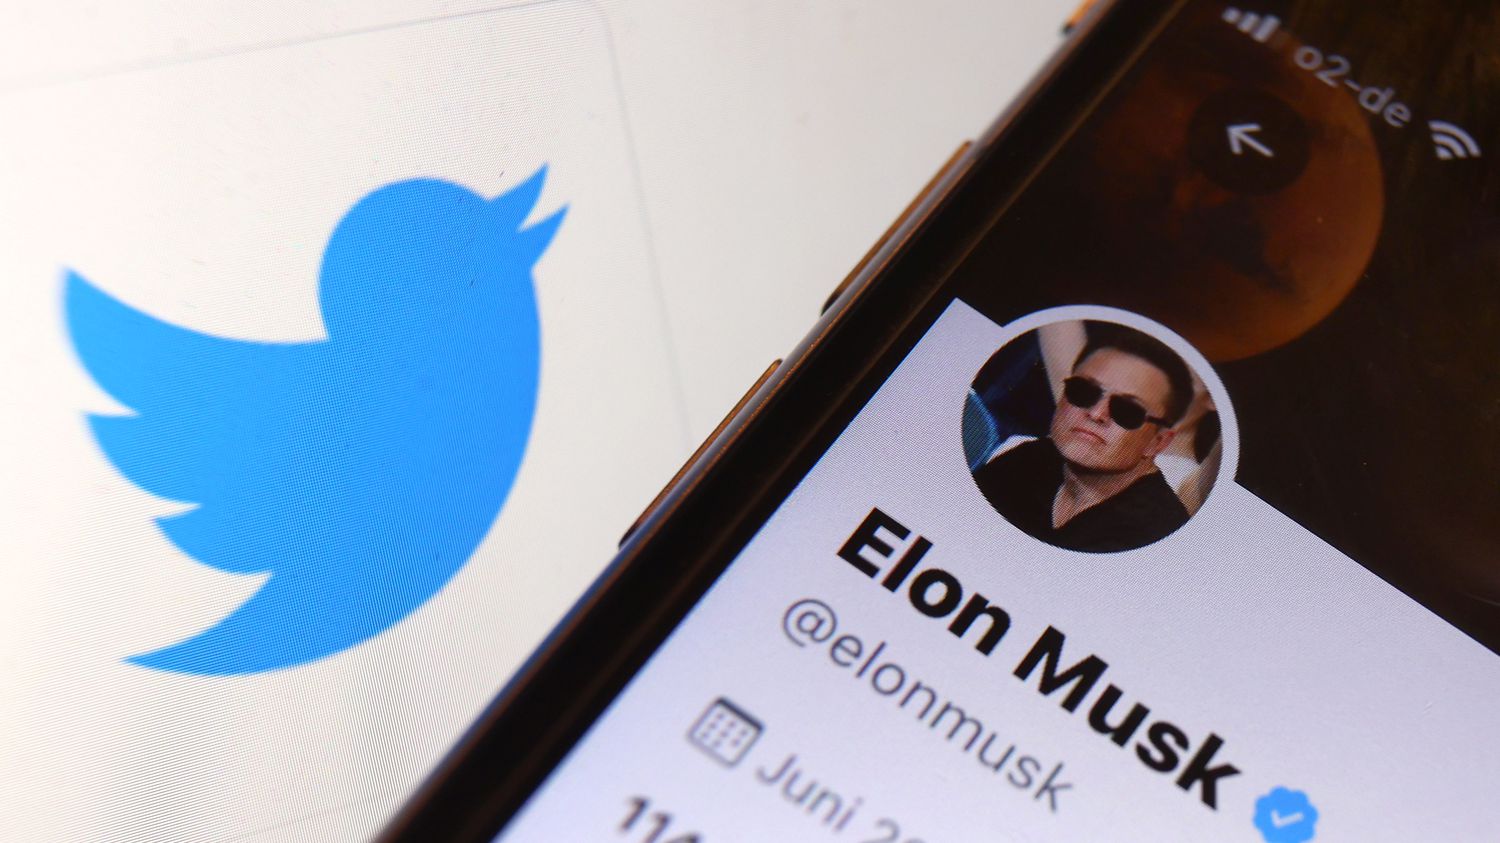 Elon Musk wants to lift Donald Trump's Twitter ban
